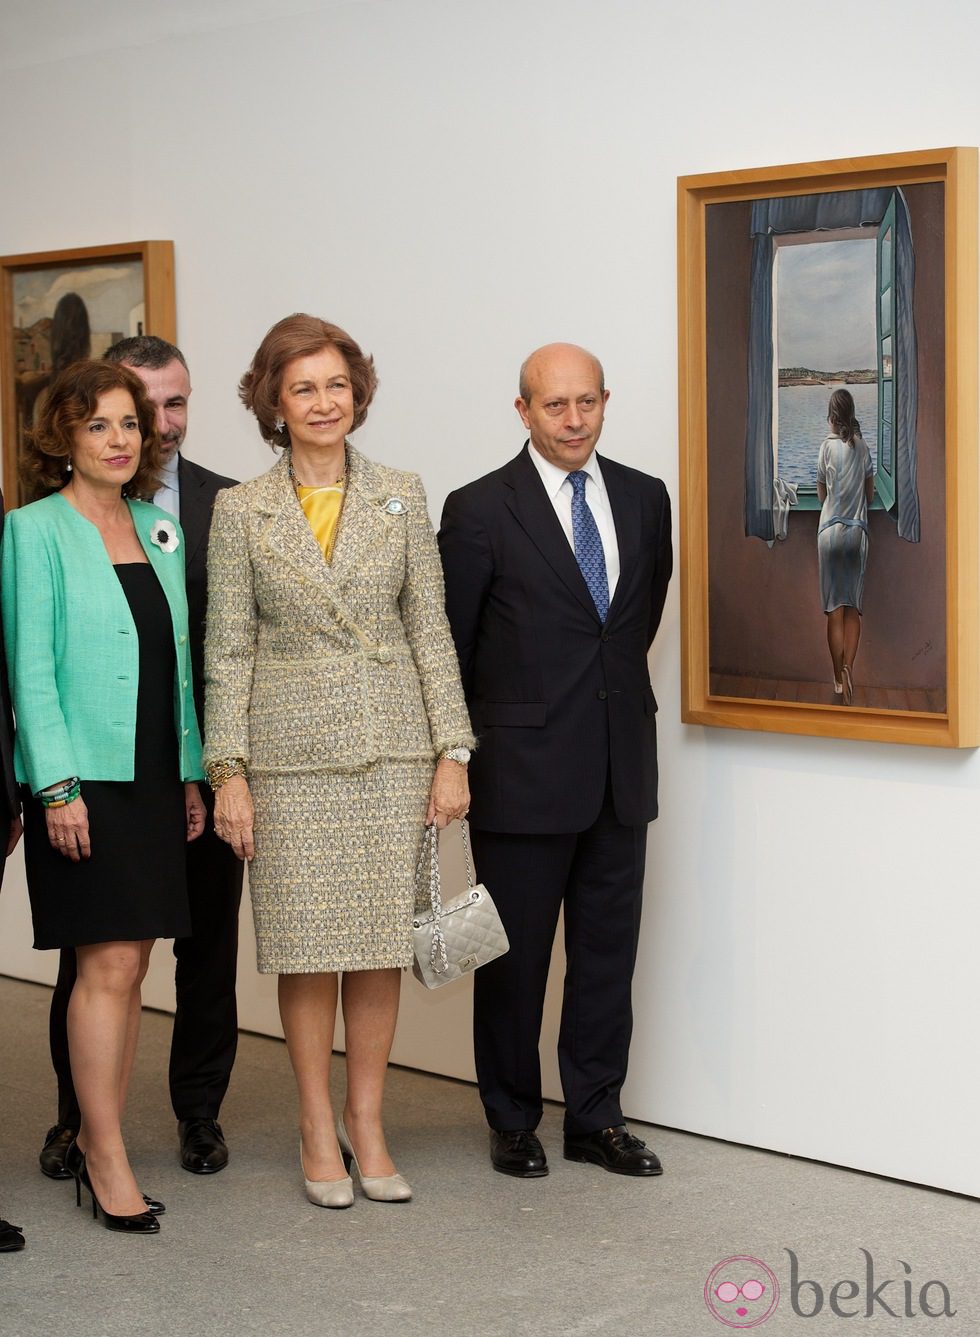 Ana Botella, la Reina Sofía y José Ignacio Wert en la inauguración de una exposición sobre Dalí